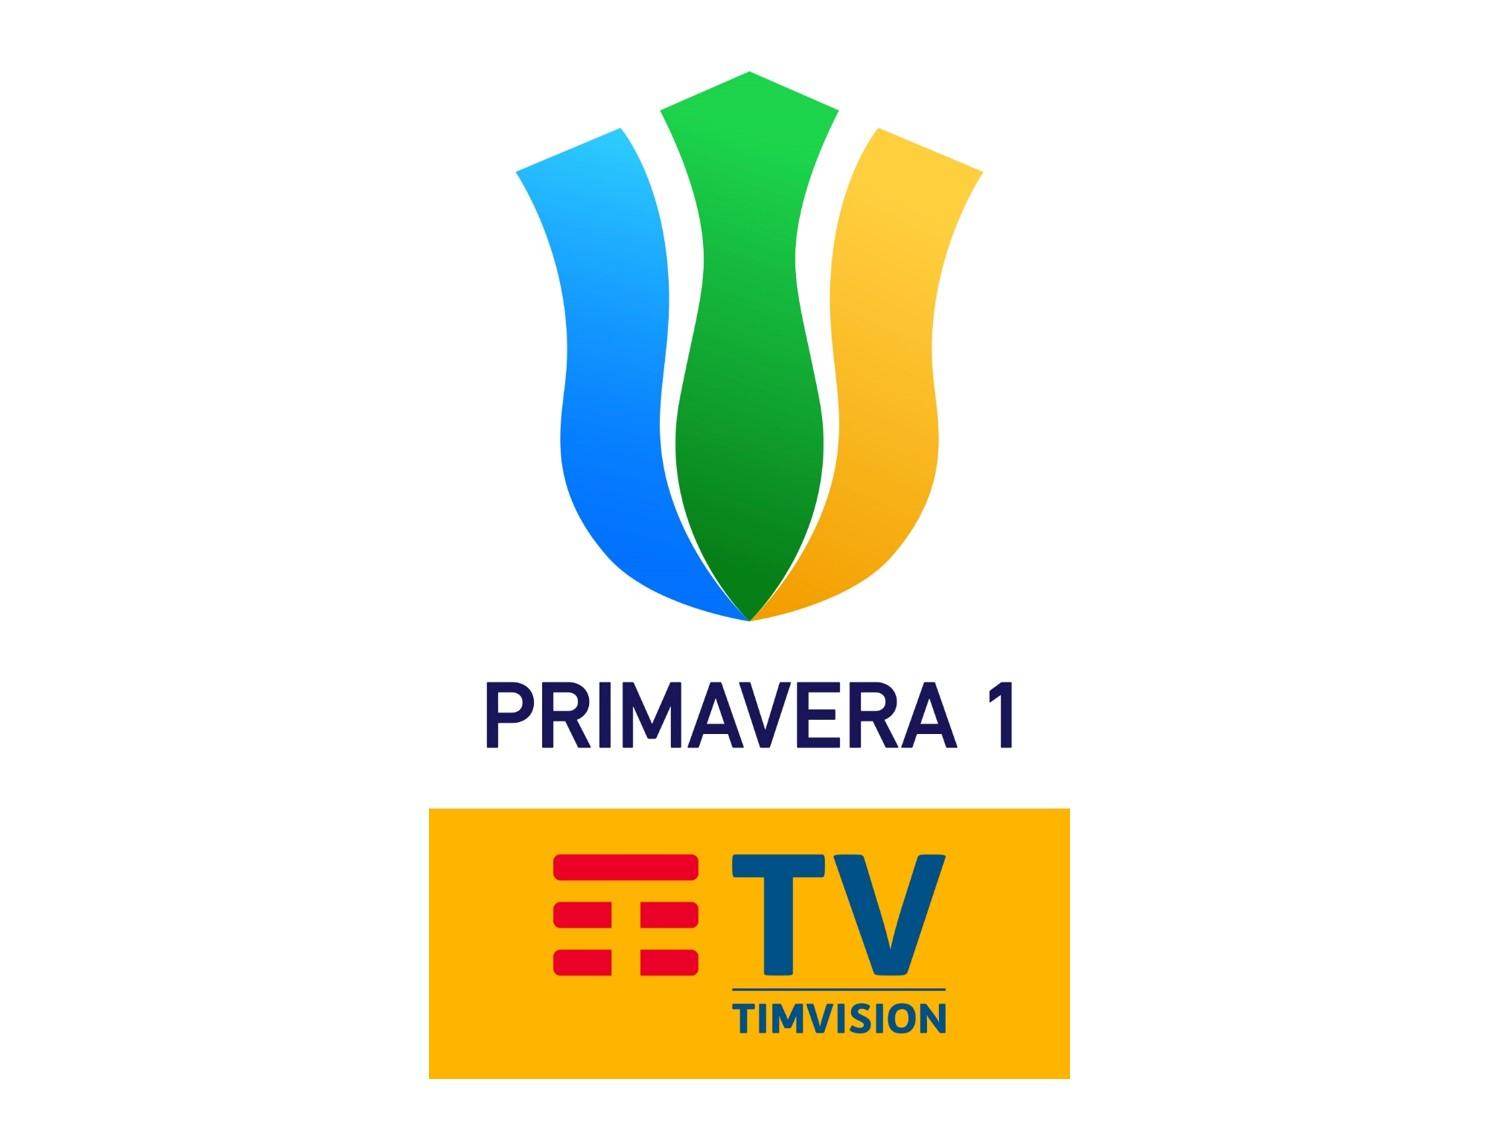 Sportitalia Campionato Primavera 1 TimVision - Programma 16a Giornata e Telecronisti